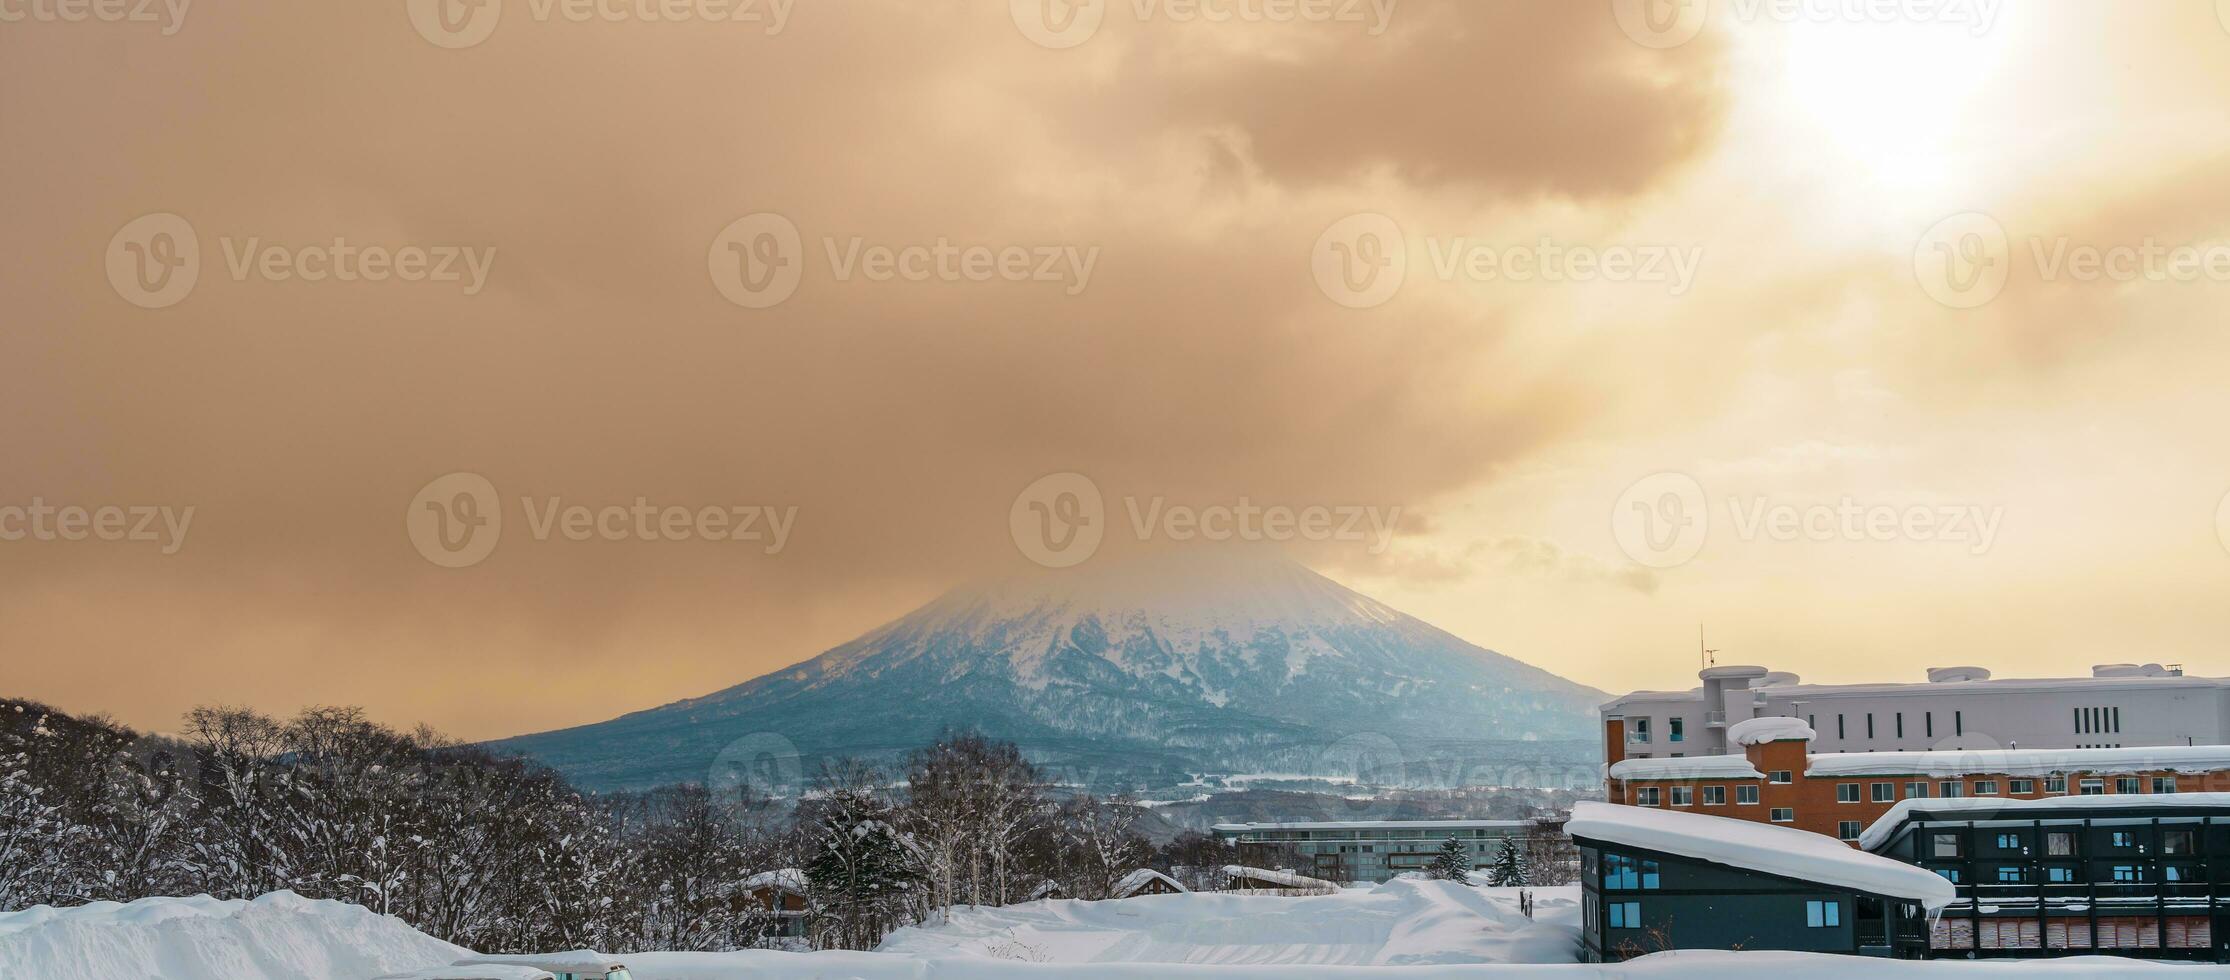 hermosa Yotei montaña con nieve en invierno temporada a niseko. punto de referencia y popular para esquí y Snowboarding turistas atracciones en Hokkaidō, Japón. viaje y vacaciones concepto foto